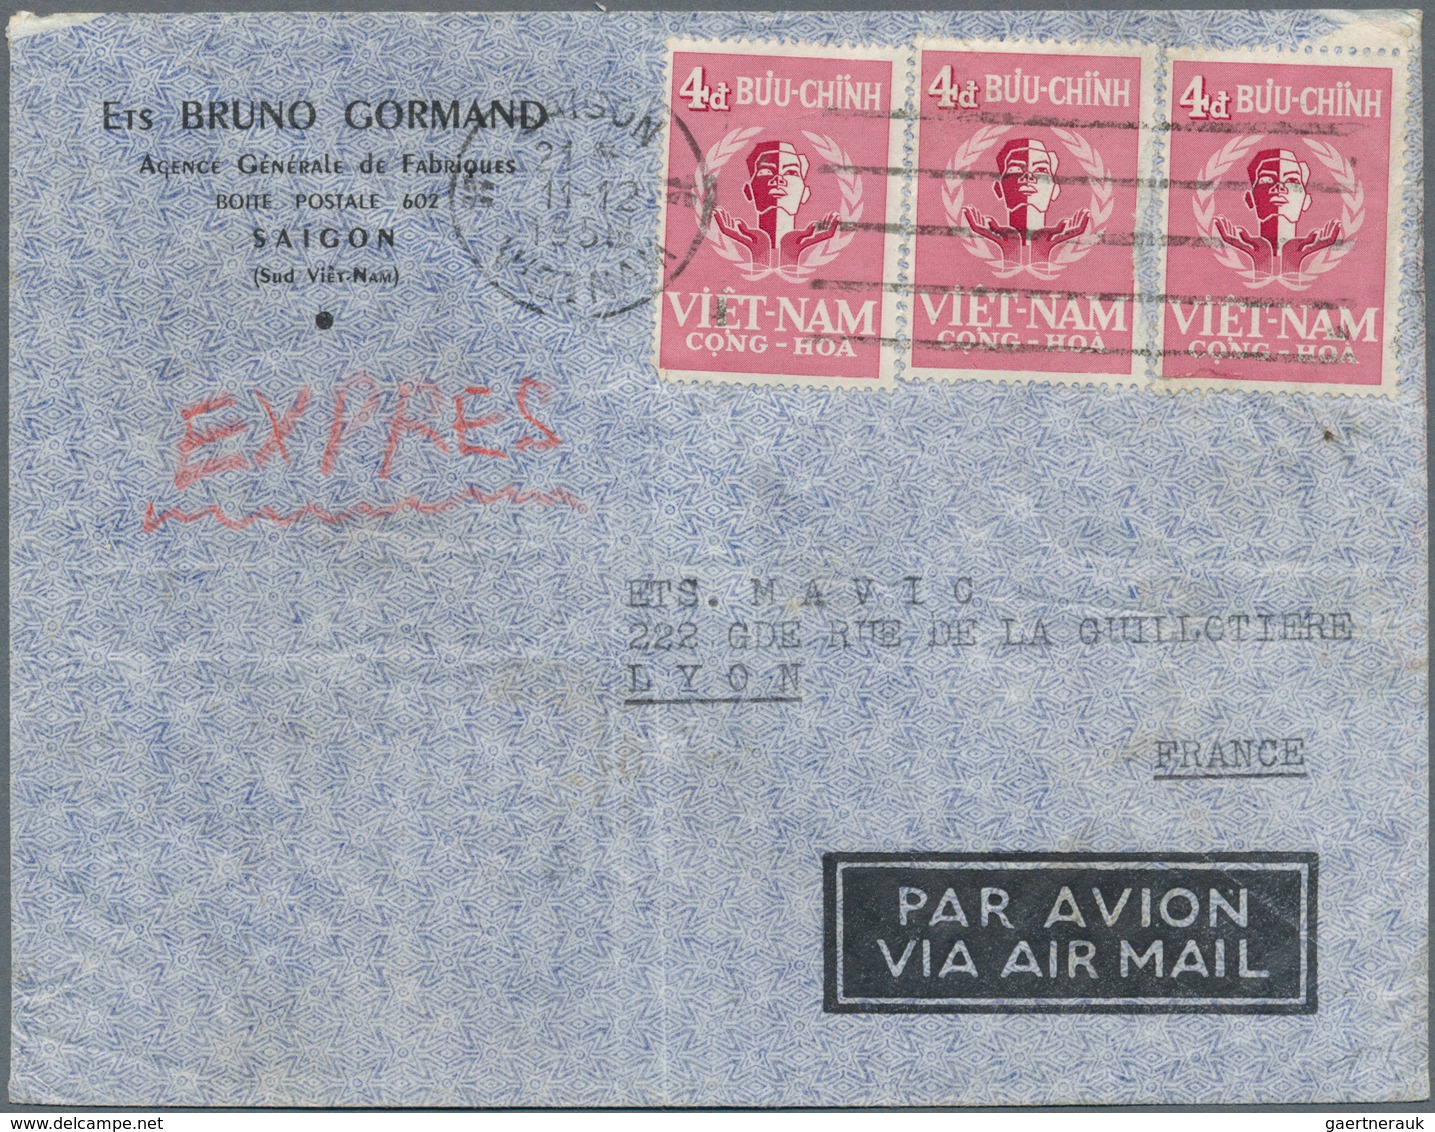 Vietnam-Süd (1951-1975): 1958, 4d (3) Tied Machine "SAIGON 11 12 1958" To Express Air Mail Cover To - Vietnam